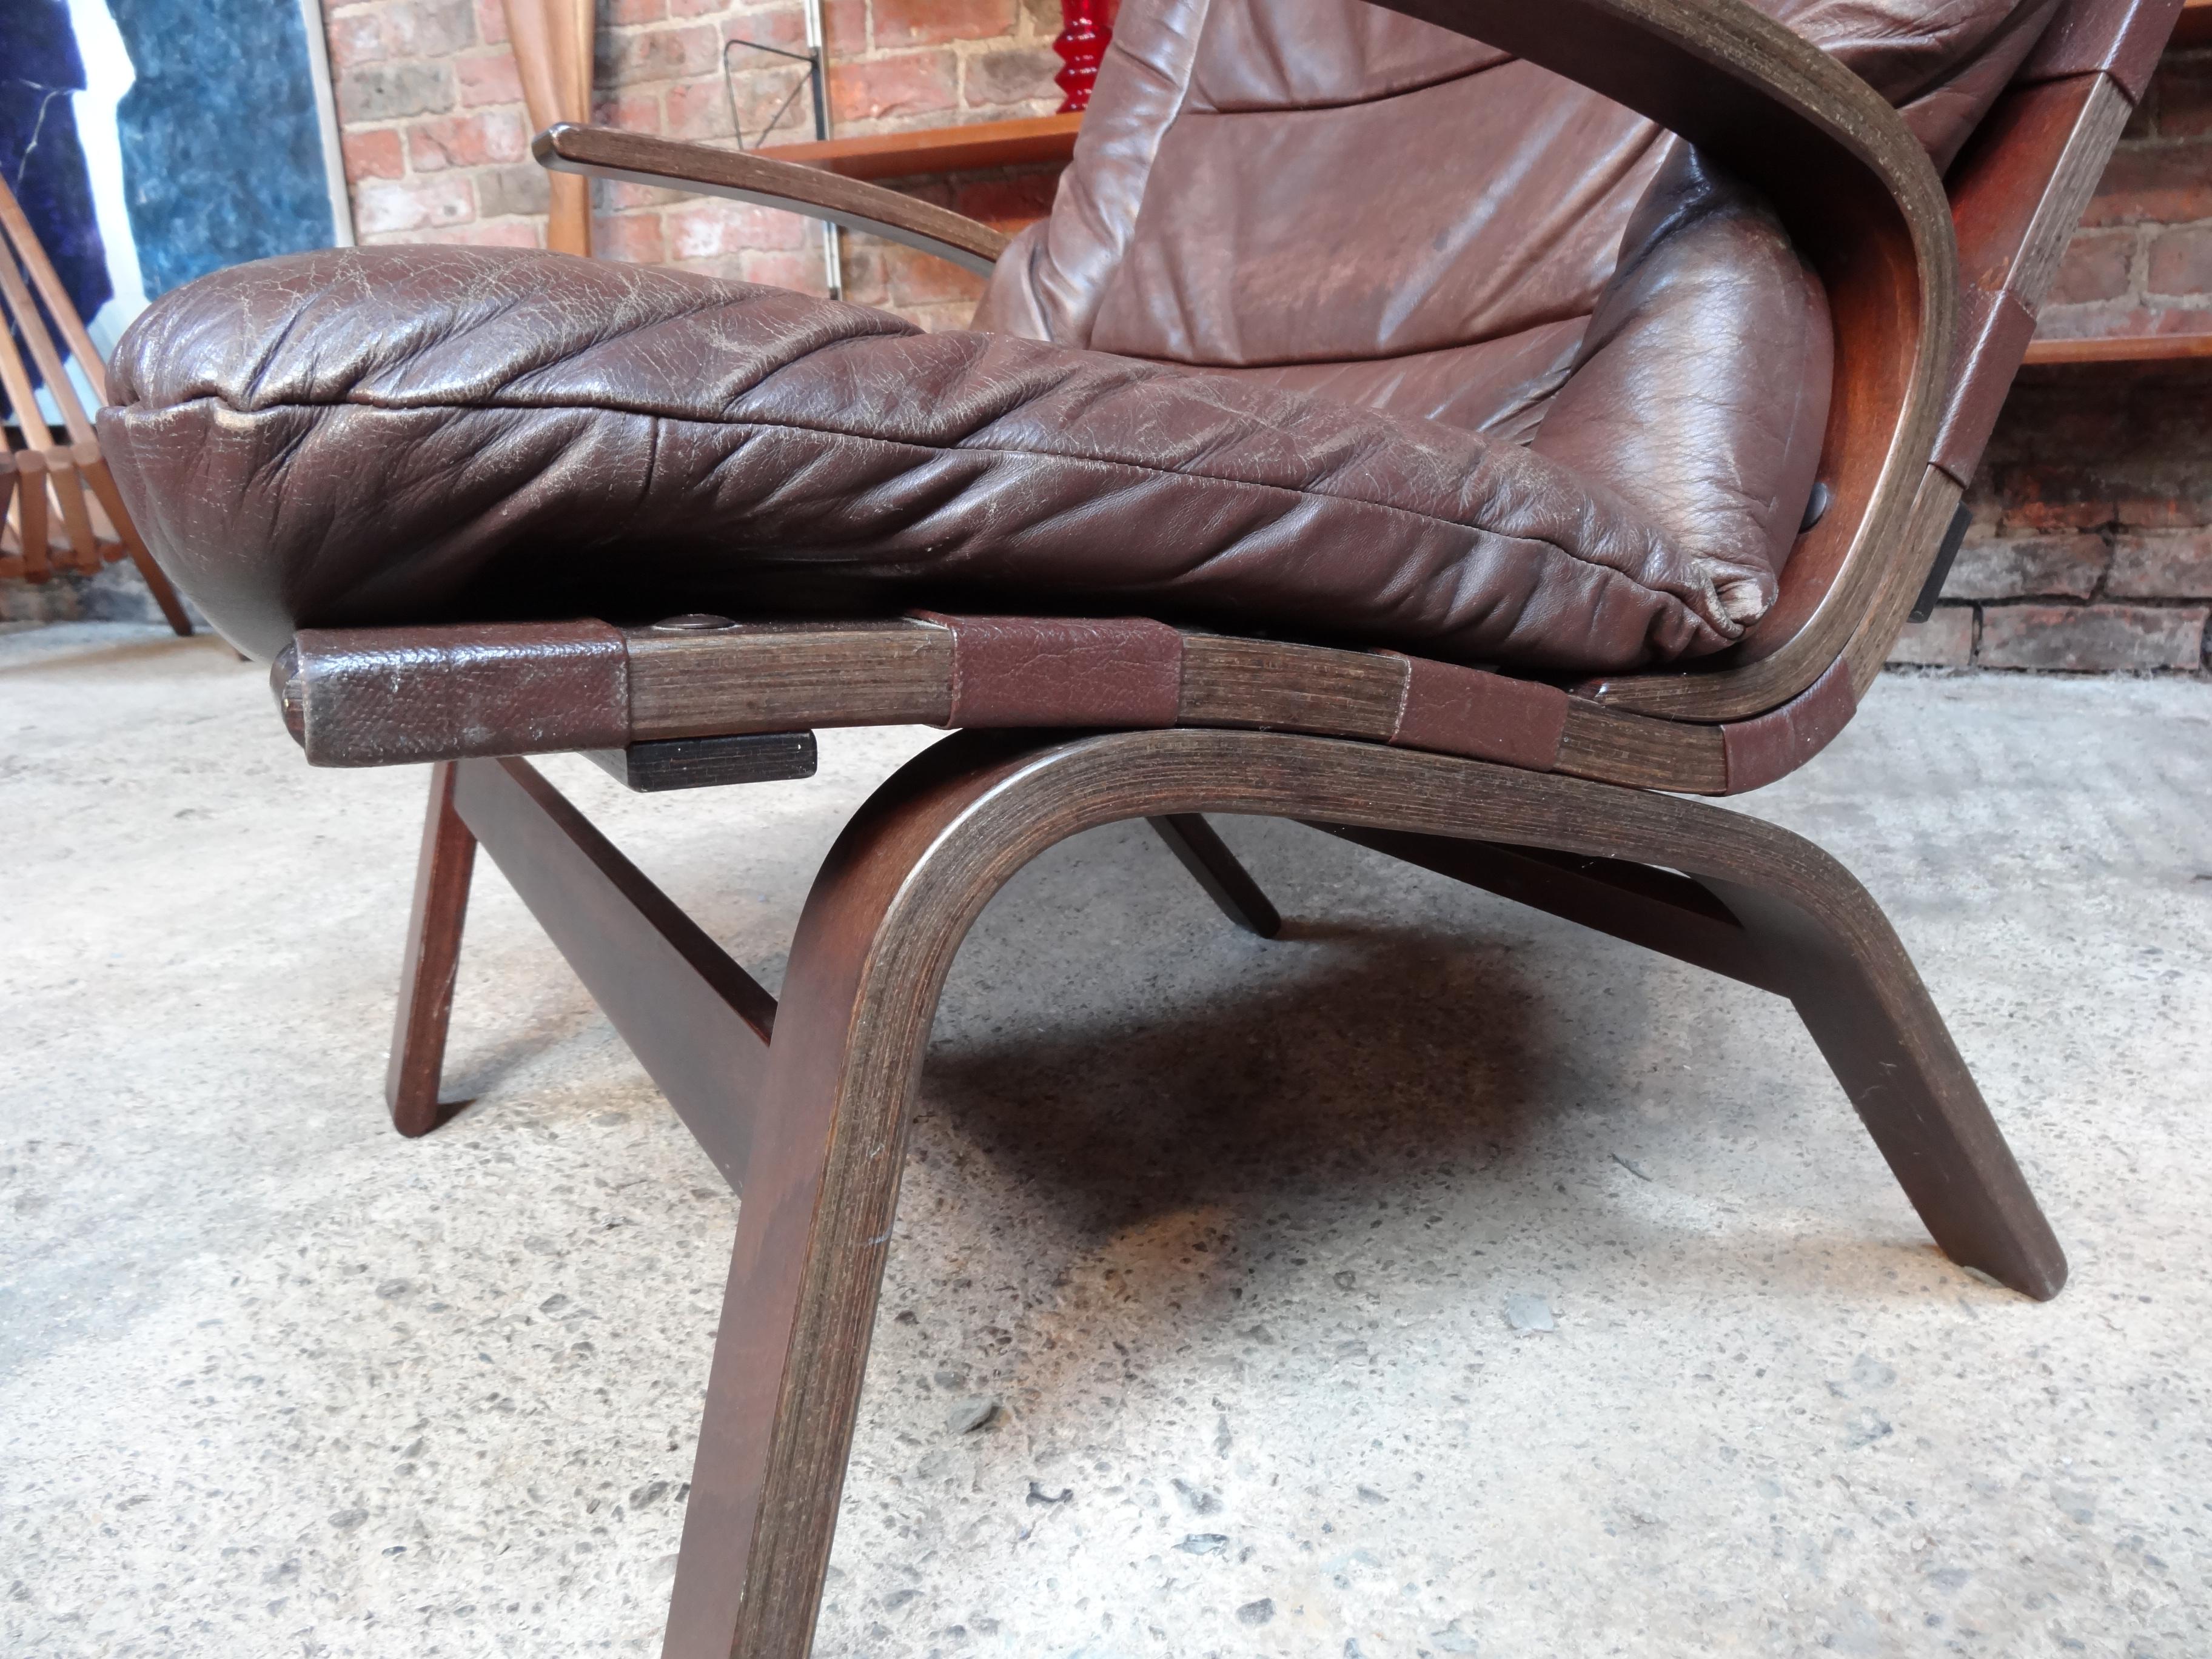 Chaise Ingmar Relling des années 1970, produite en Norvège par le célèbre fabricant de meubles 'Westnofa Møbelfabrikk', la chaise est recouverte d'un cuir marron, le cuir a une belle patine et est en très bon état, très confortable !

Mesures :